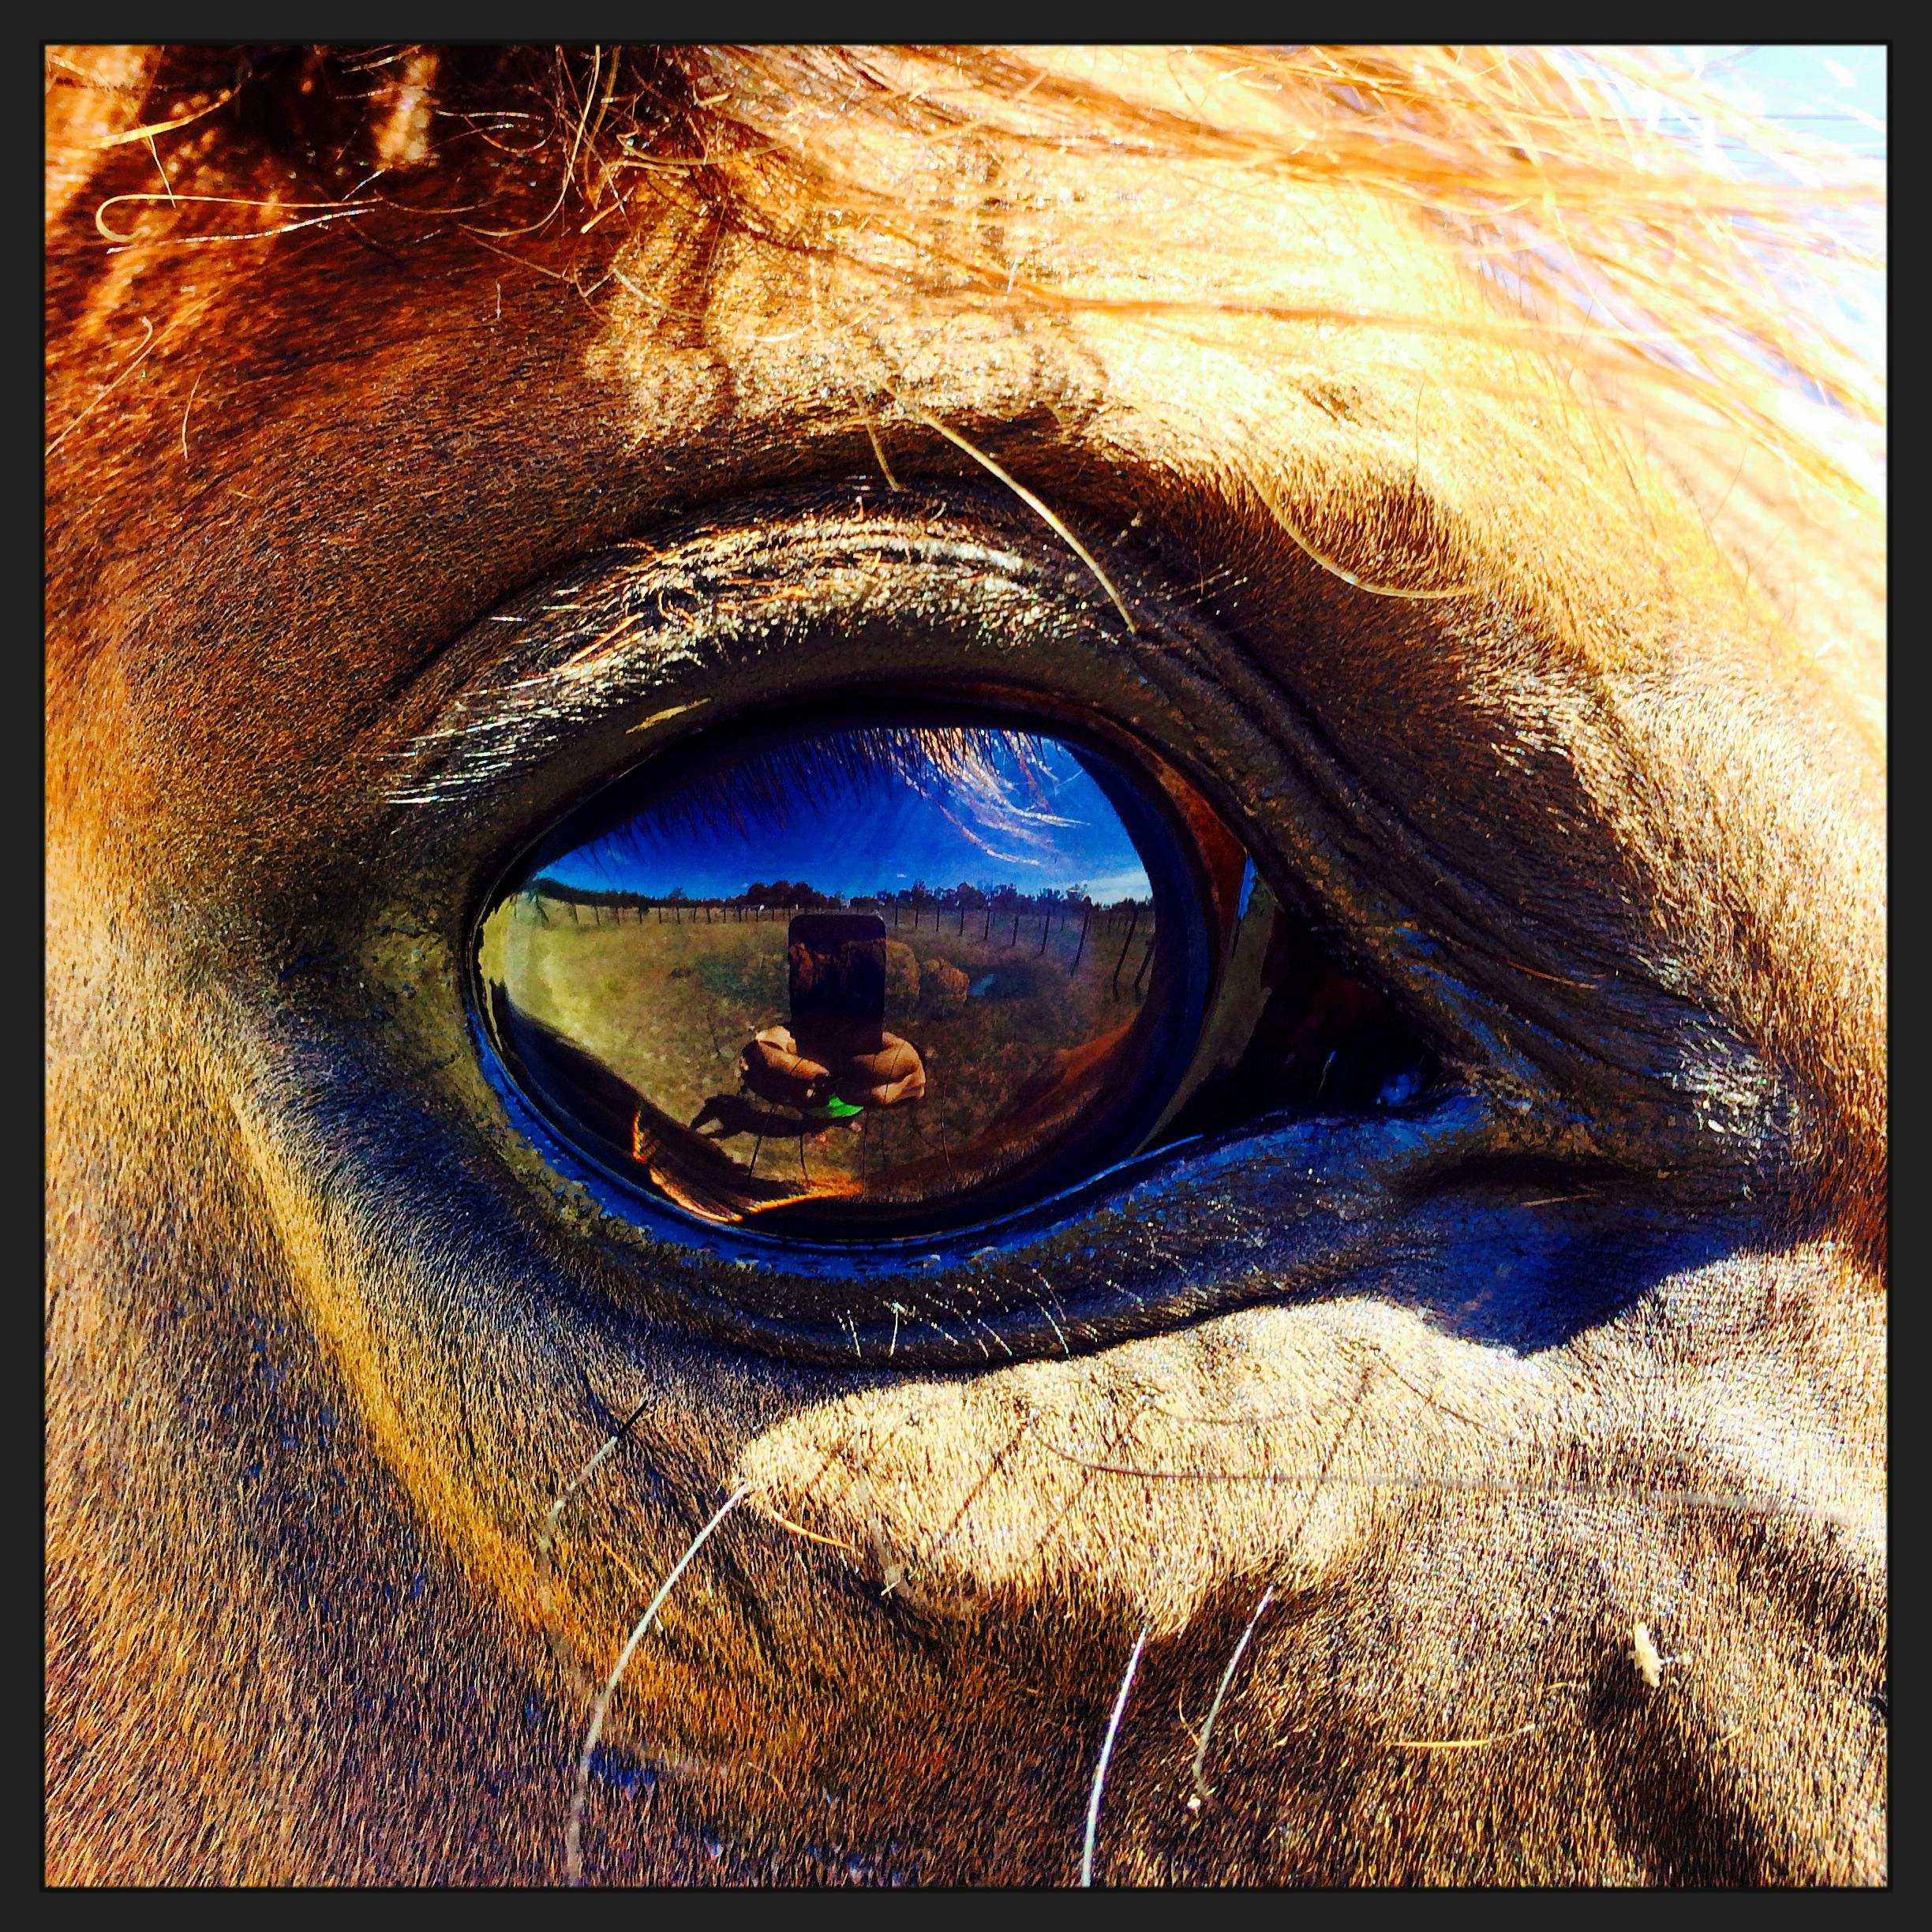 Free stock photo of animal portrait, big eyes, horse